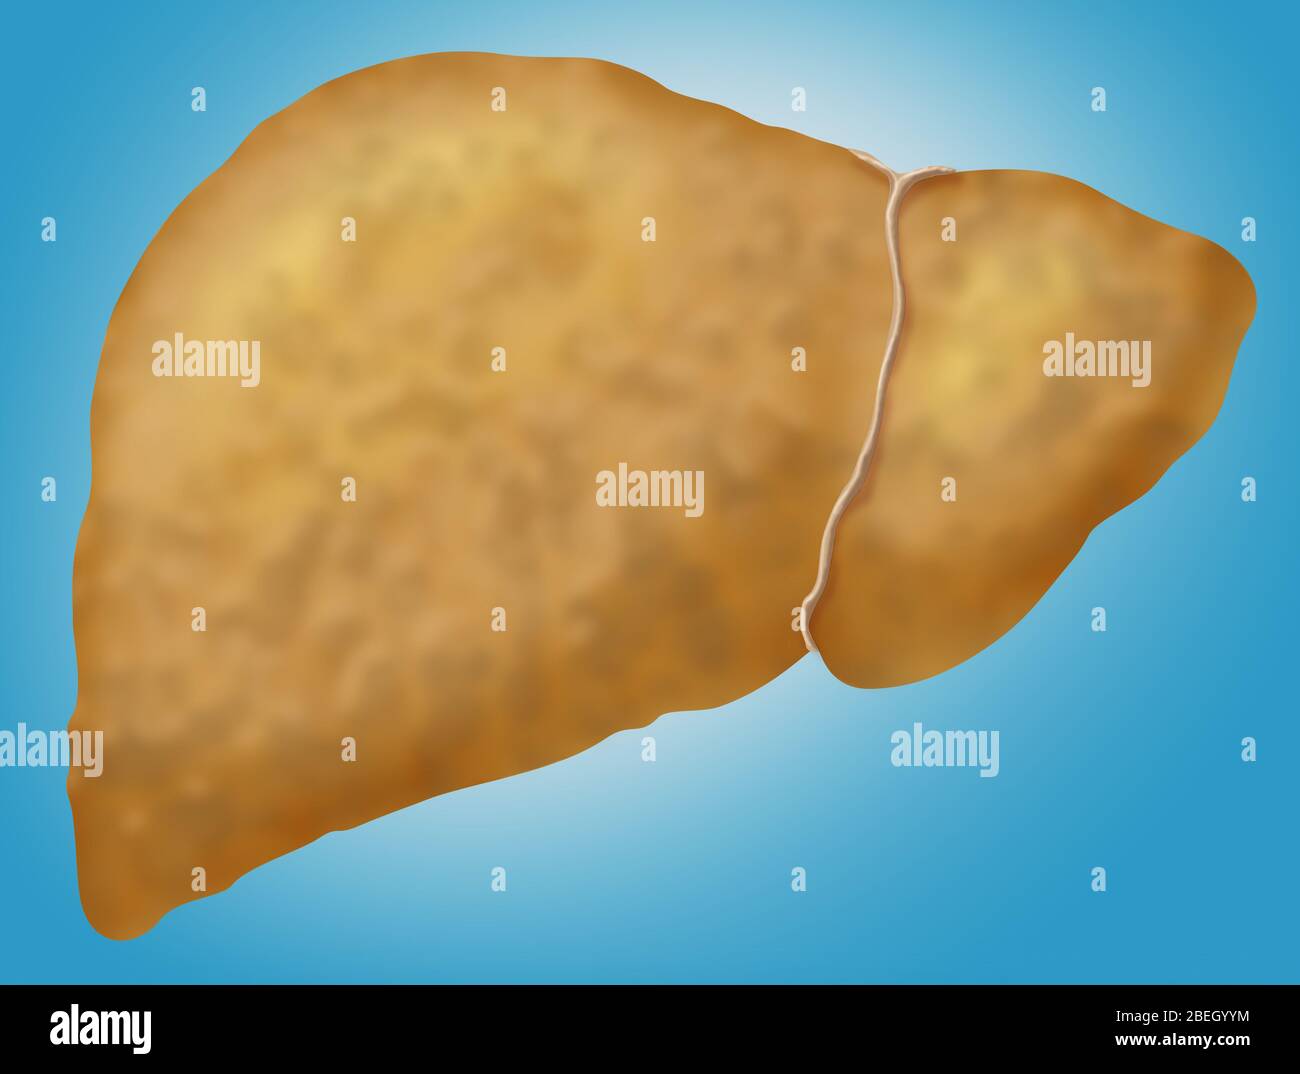 La enfermedad de hígado graso Foto de stock